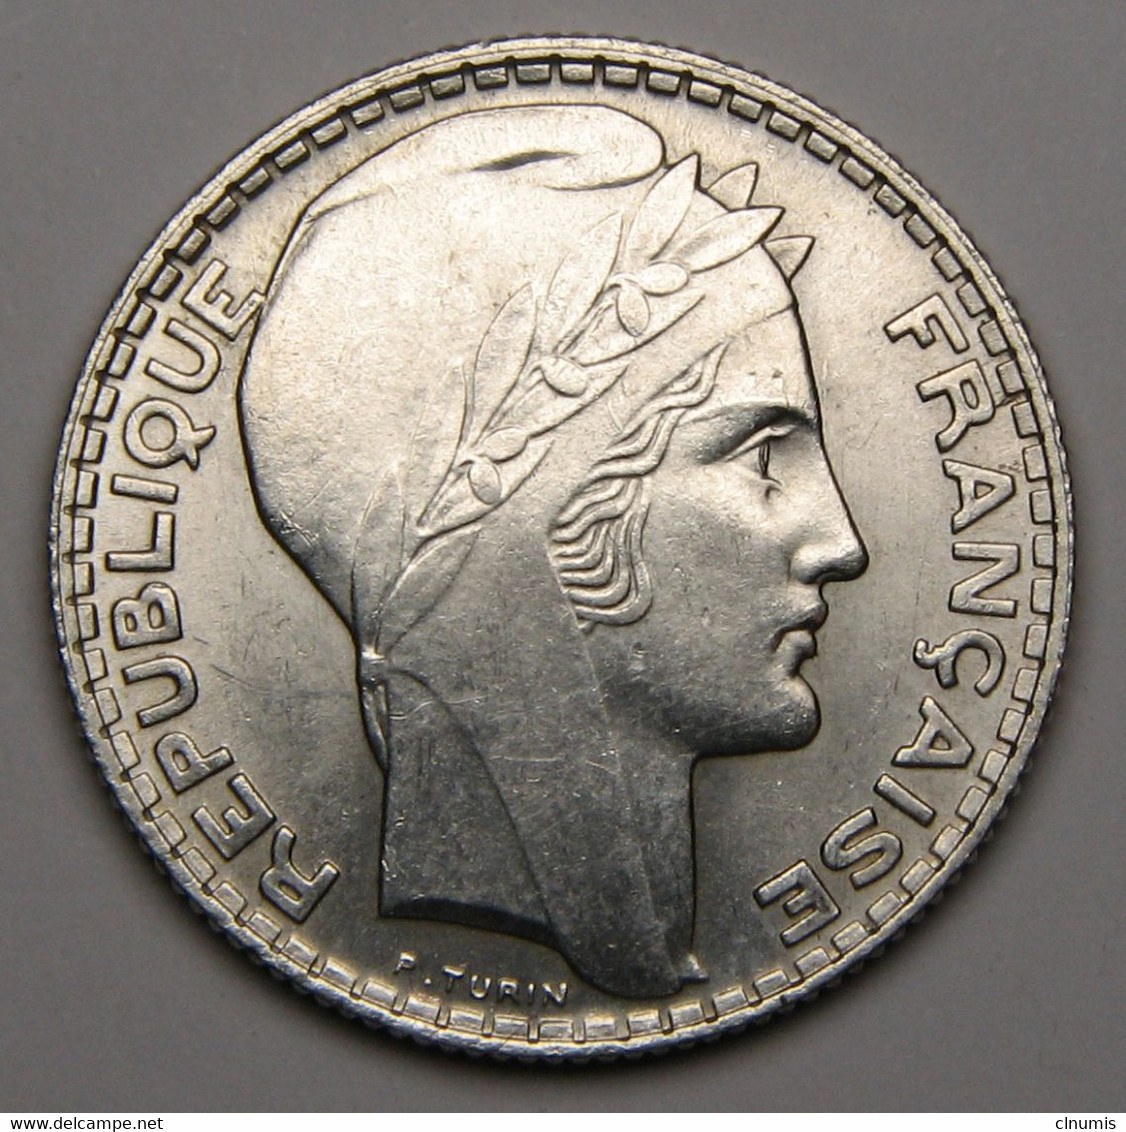 ASSEZ RARE En SPL ! 10 Francs Turin, 1930, Argent - III° République - 10 Francs